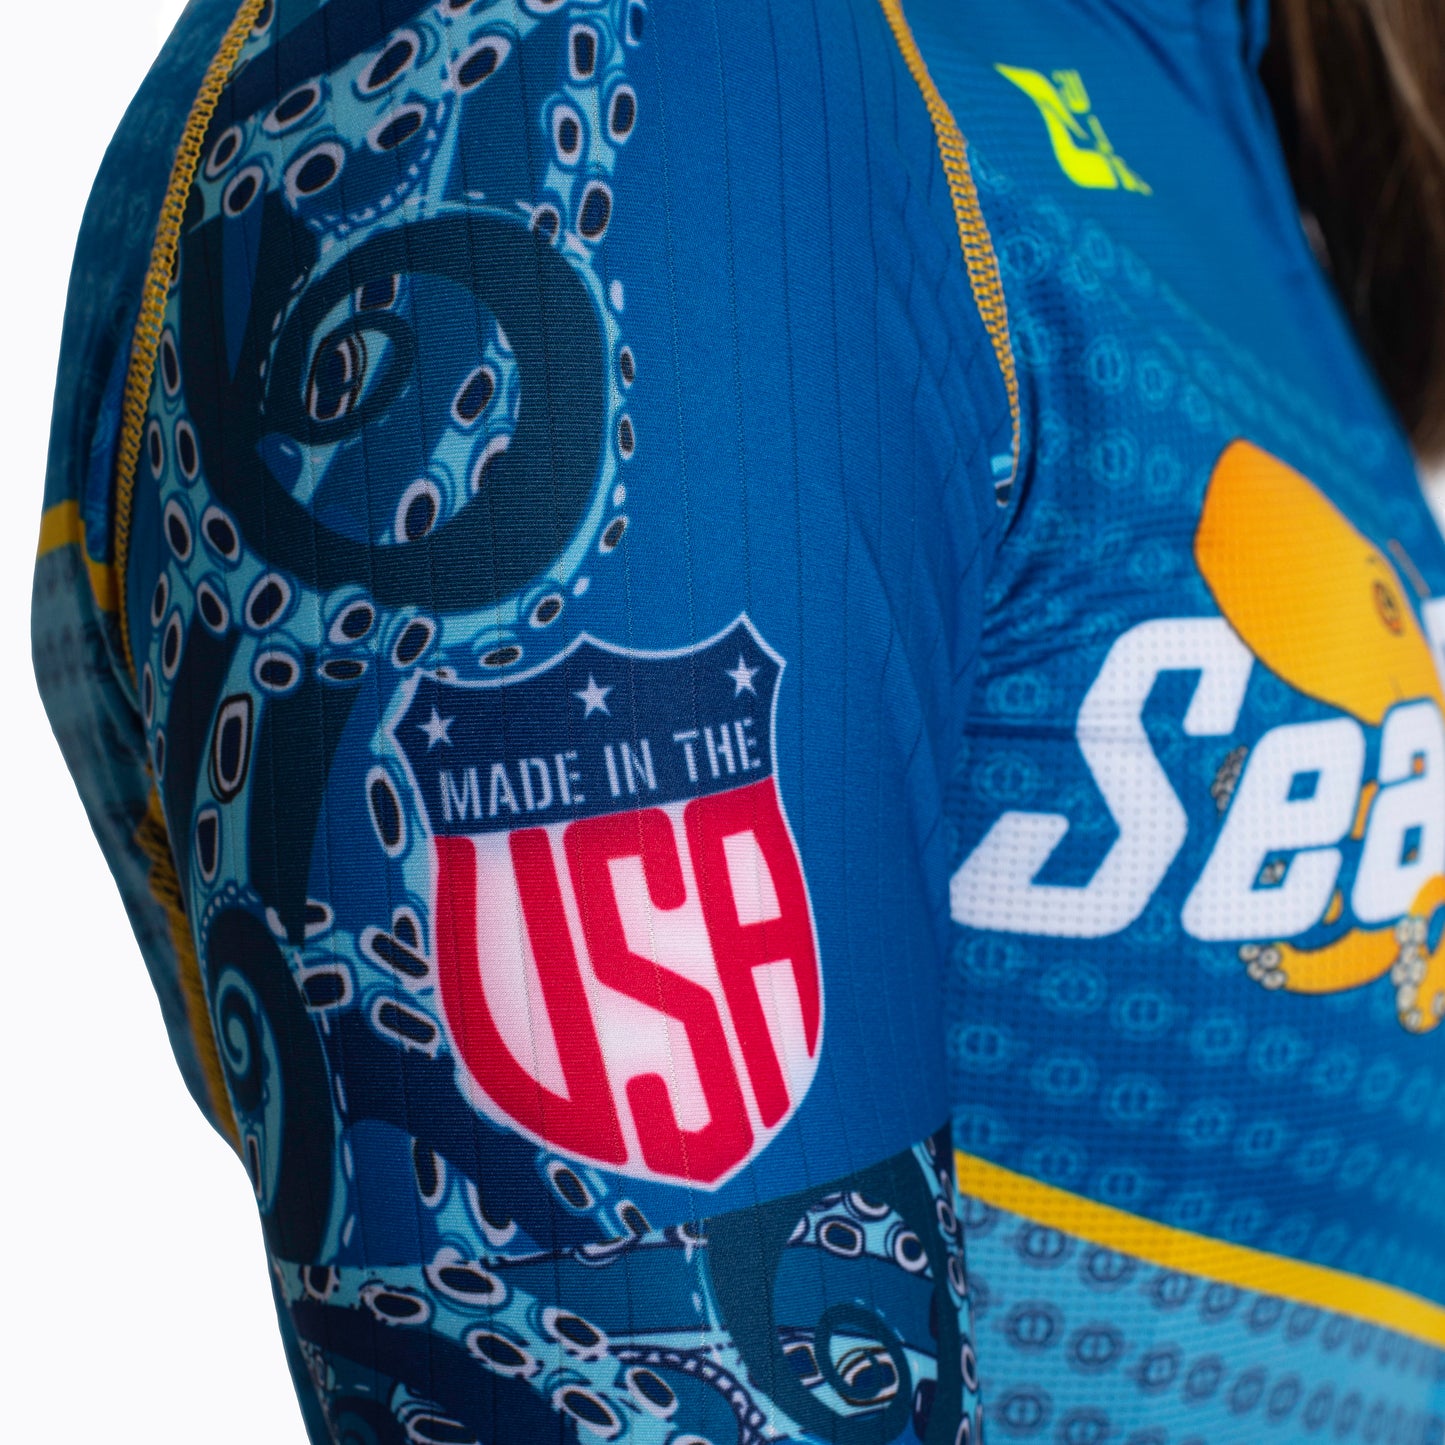 SeaSucker 2022 Women's Cycling Kit by Ale